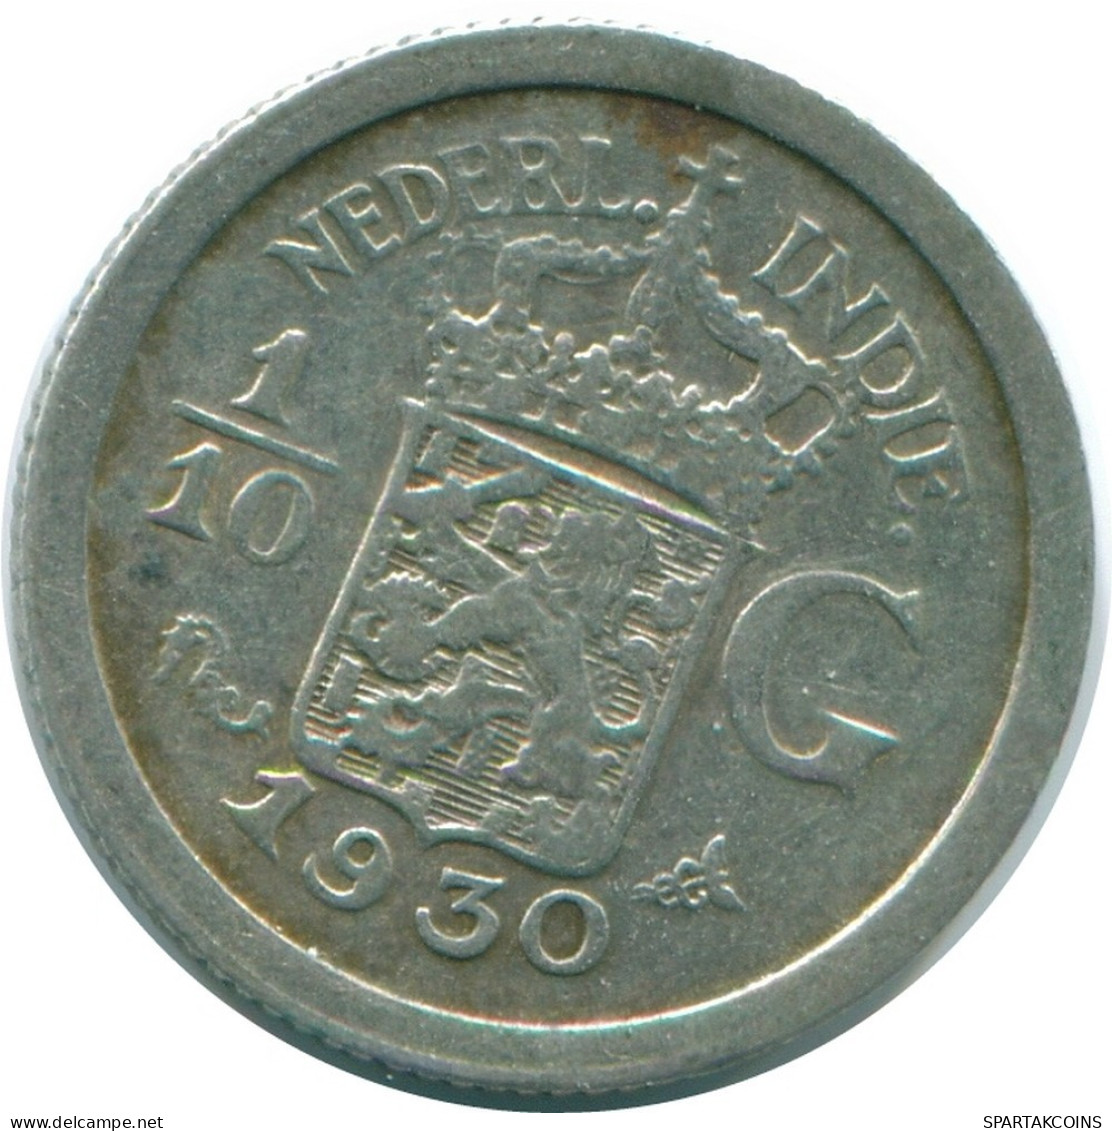 1/10 GULDEN 1930 NETHERLANDS EAST INDIES SILVER Colonial Coin #NL13446.3.U.A - Niederländisch-Indien